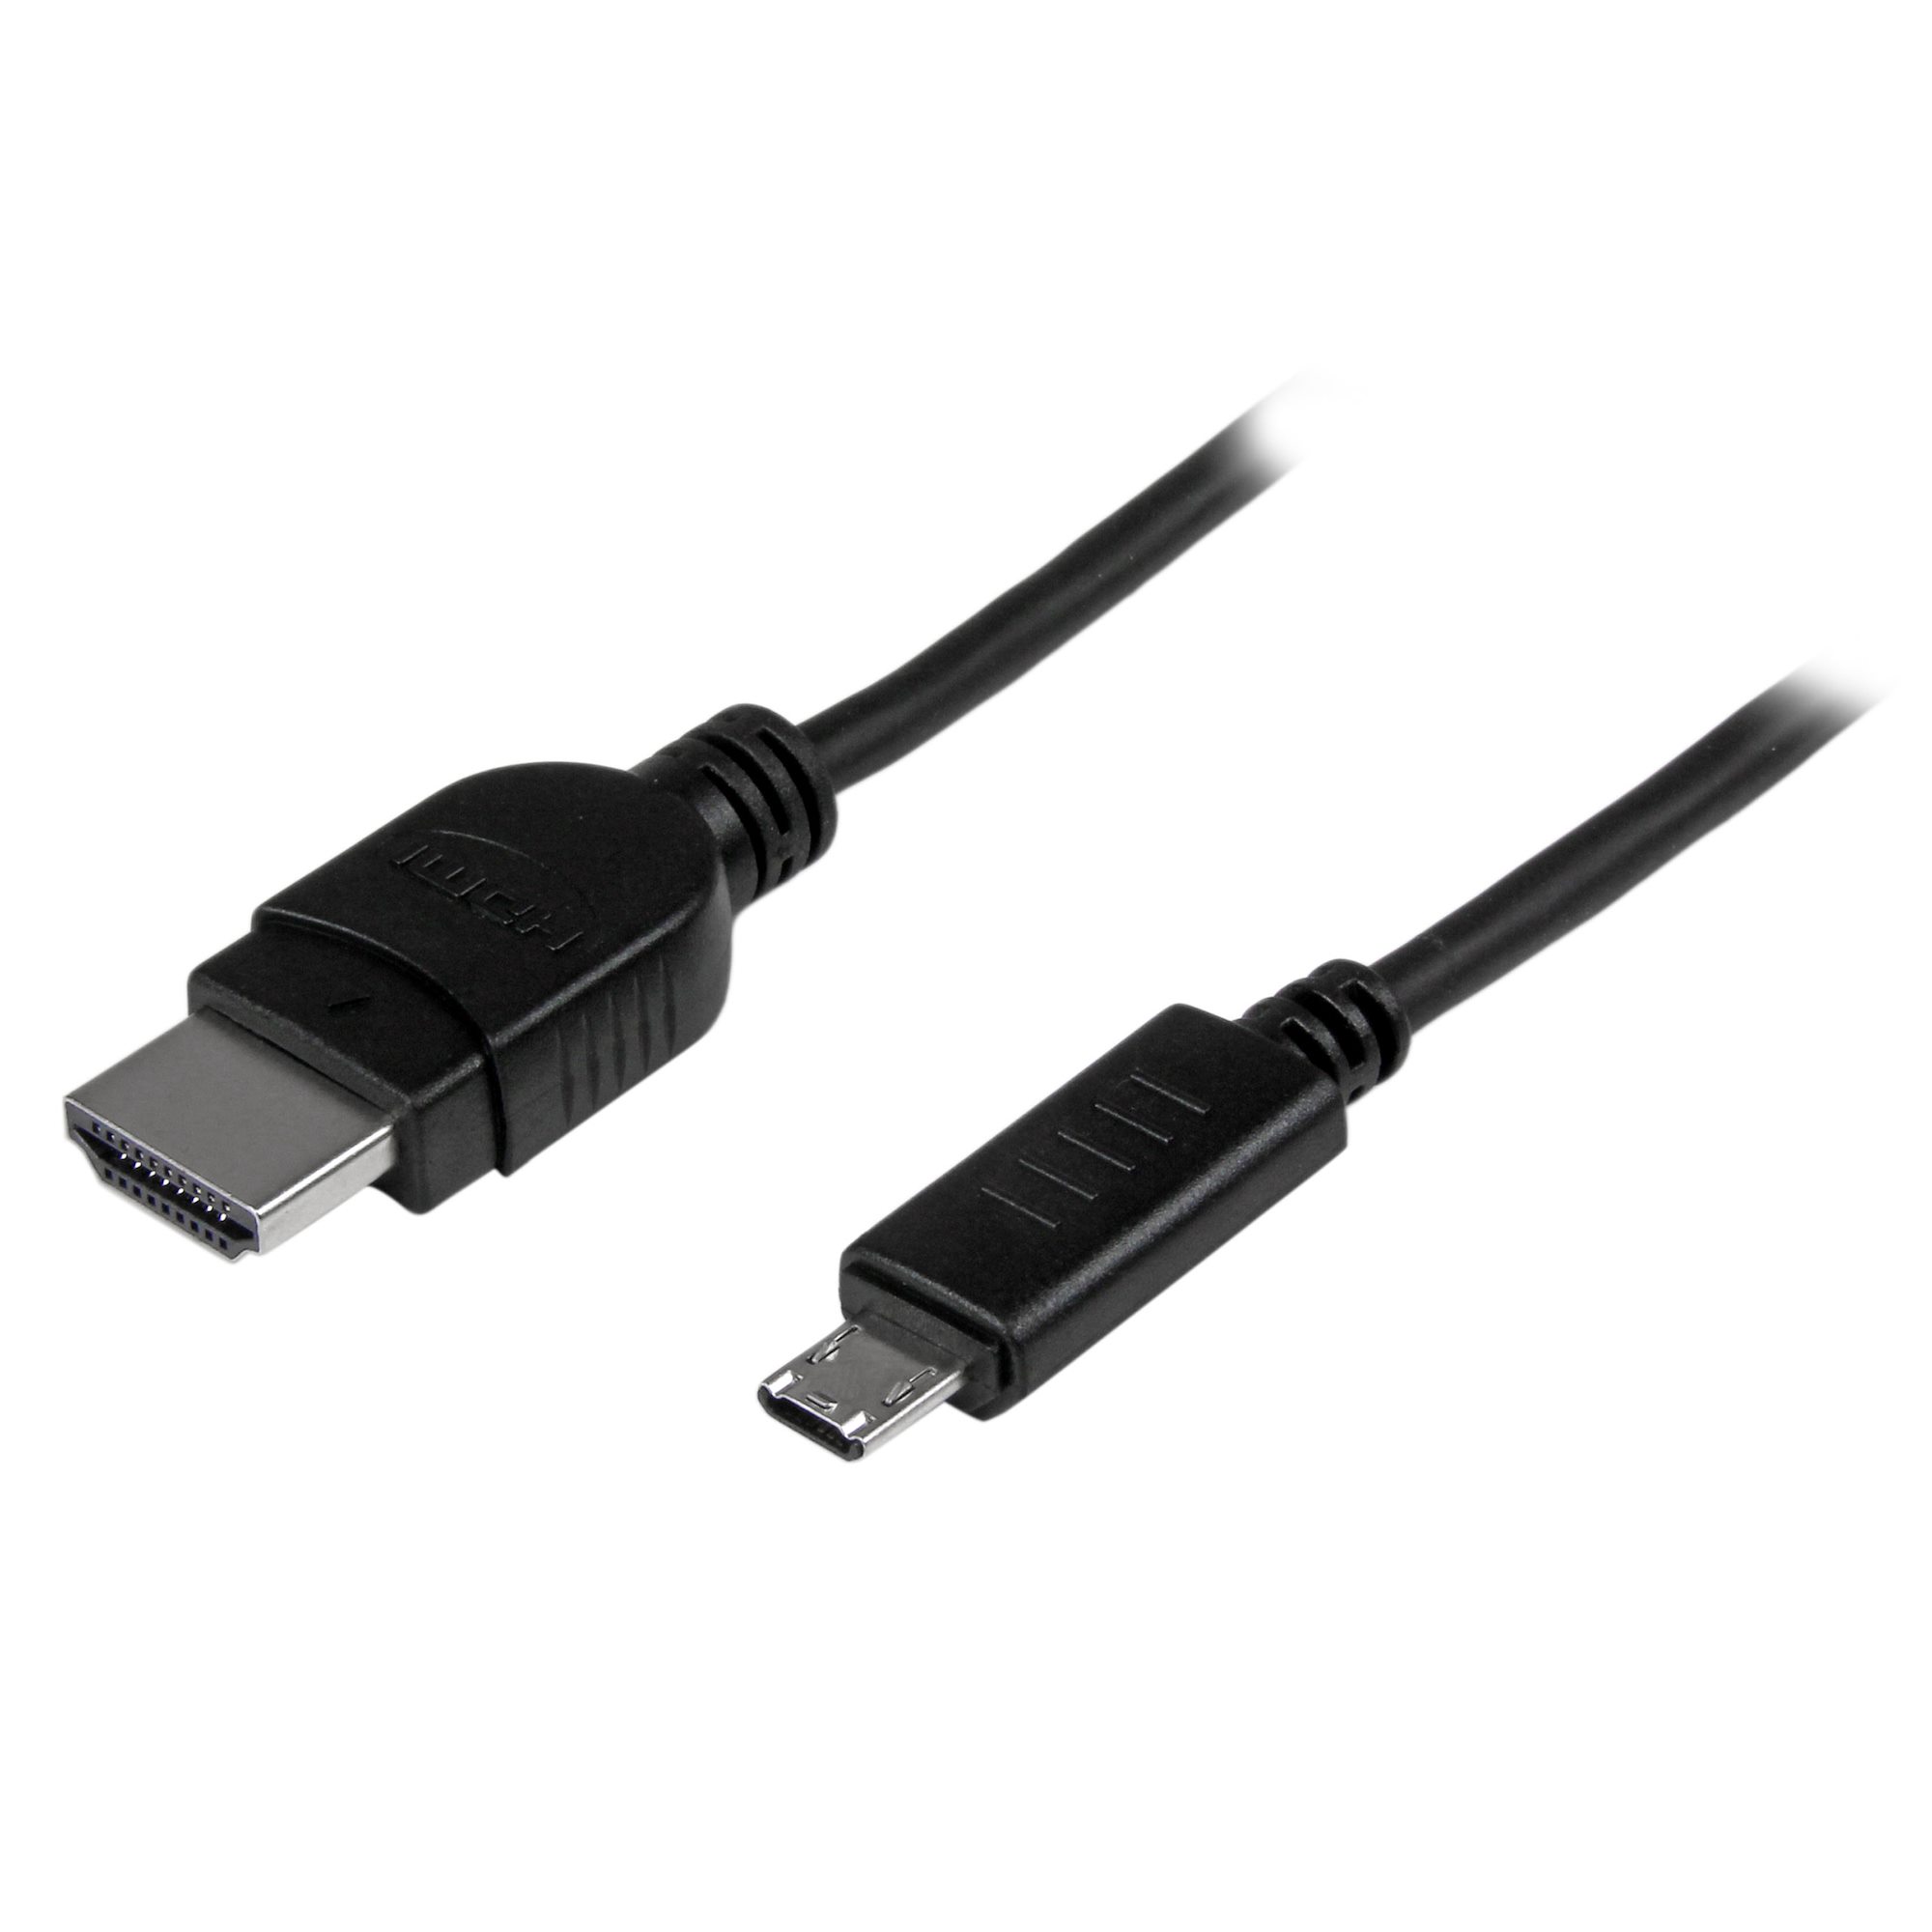 Micro USB vers HDMI MHL adaptateur Mobile High-Definition Link pour tous  les périphériques de MHL